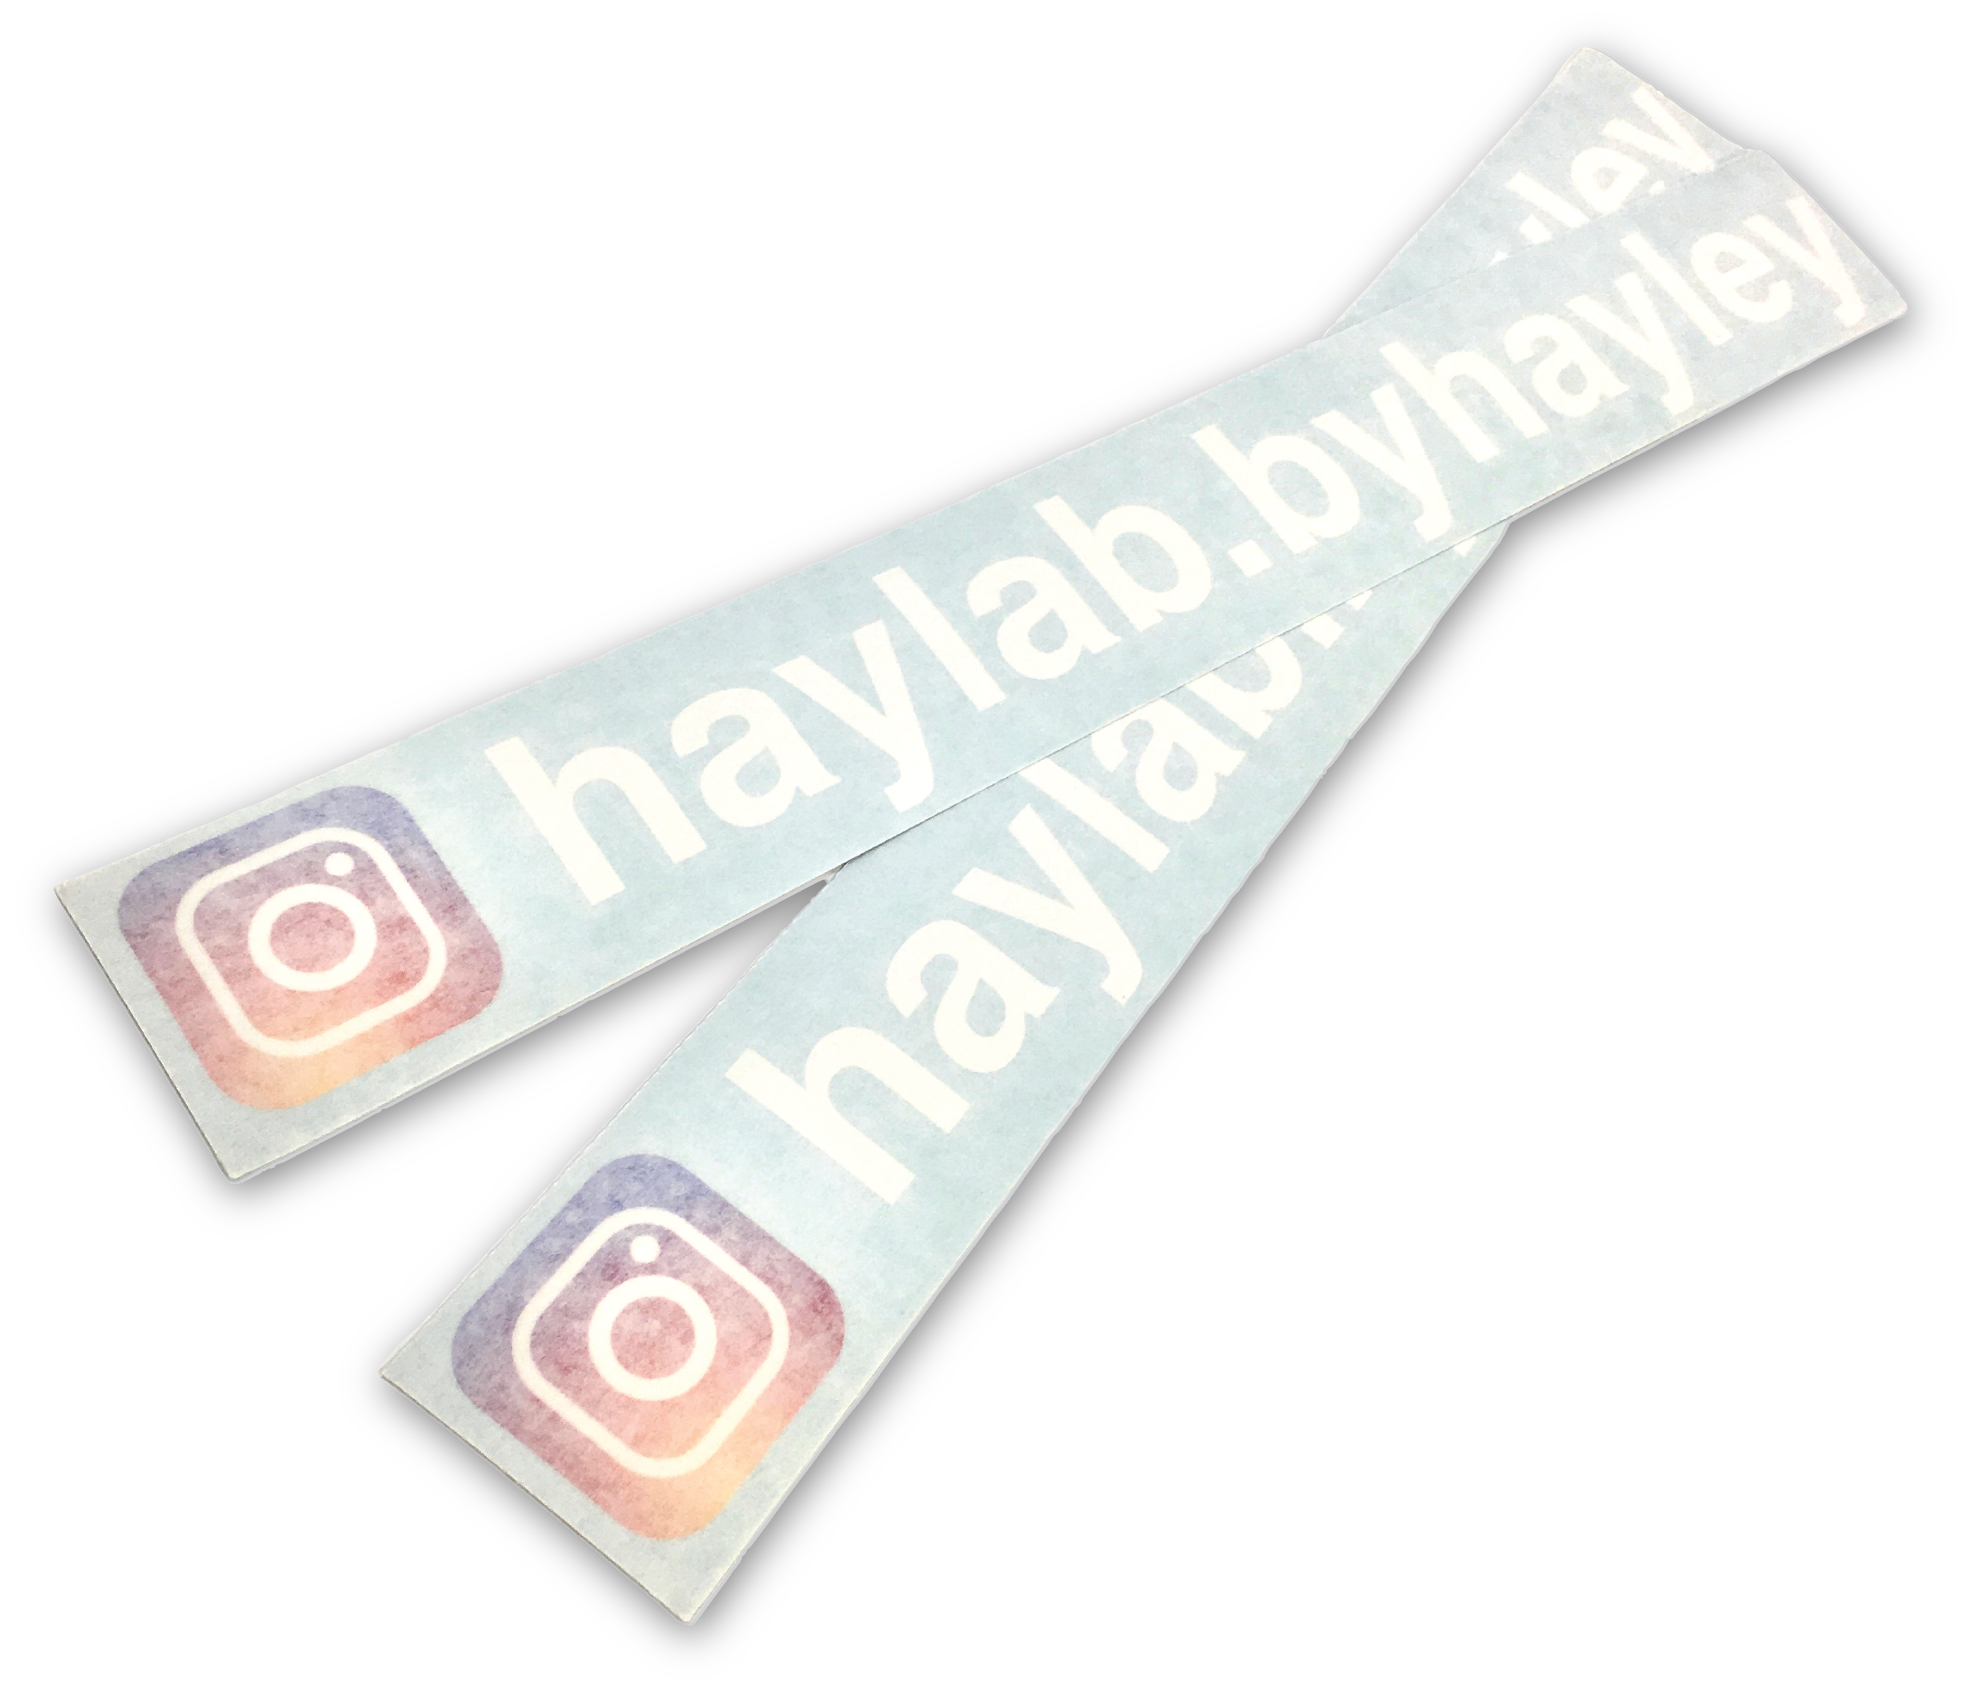 Instagram Full colour sticker